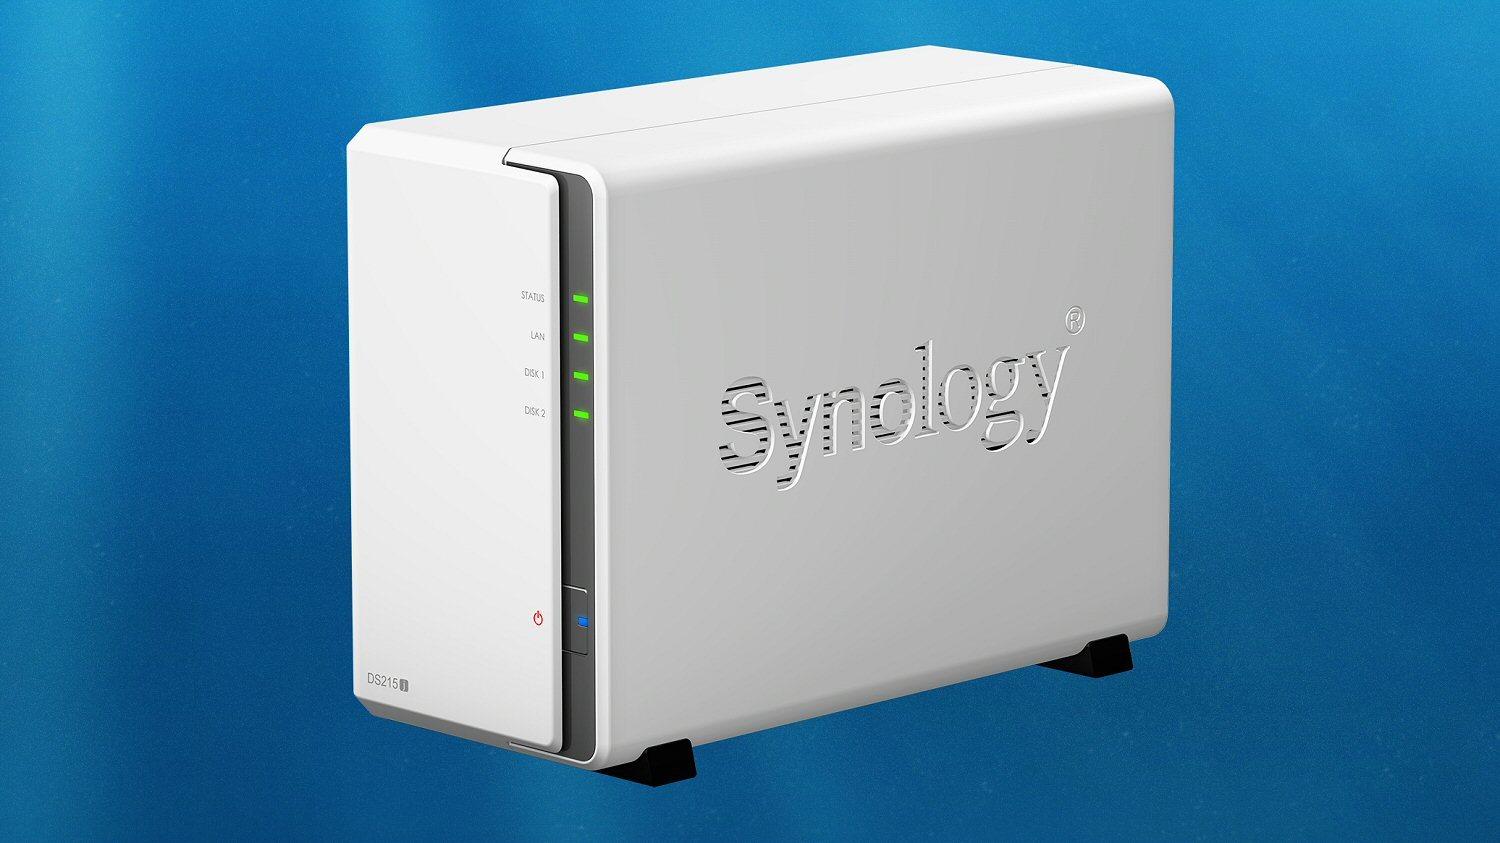 Synology slipper ny nettverksdisk for hjemmebruk